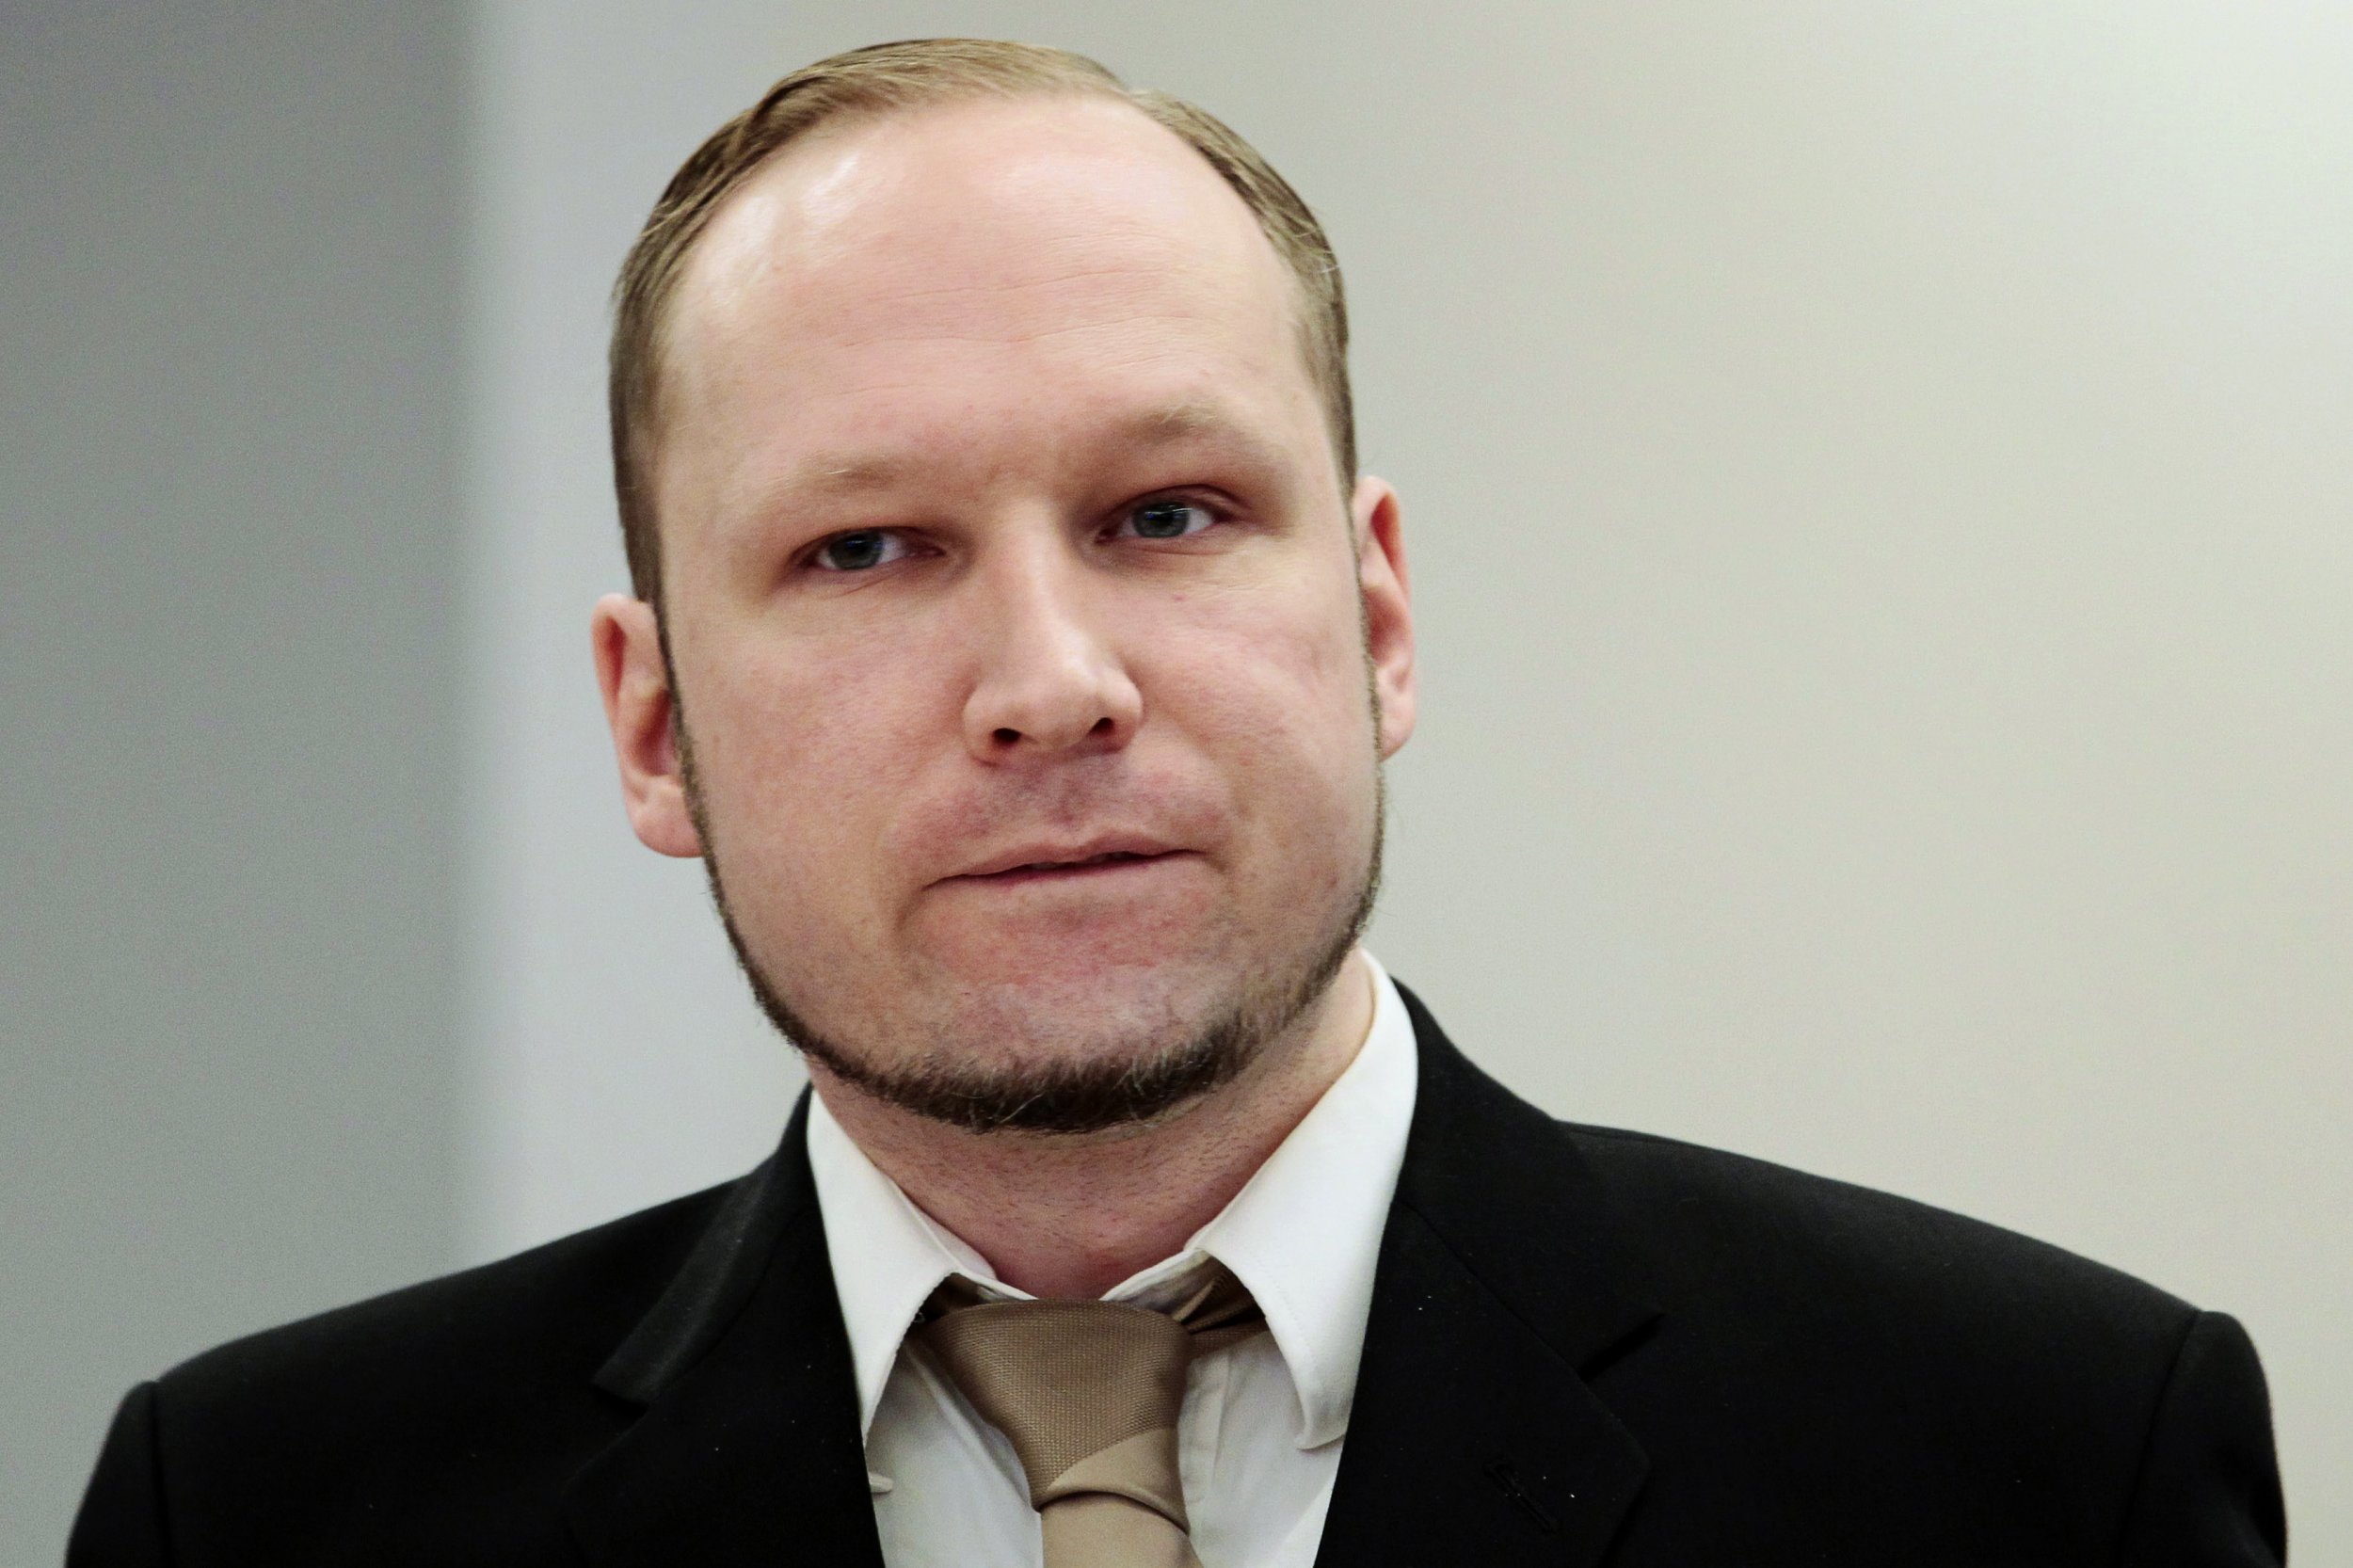 Norway To Appeal Anders Breivik Human Rights Verdict